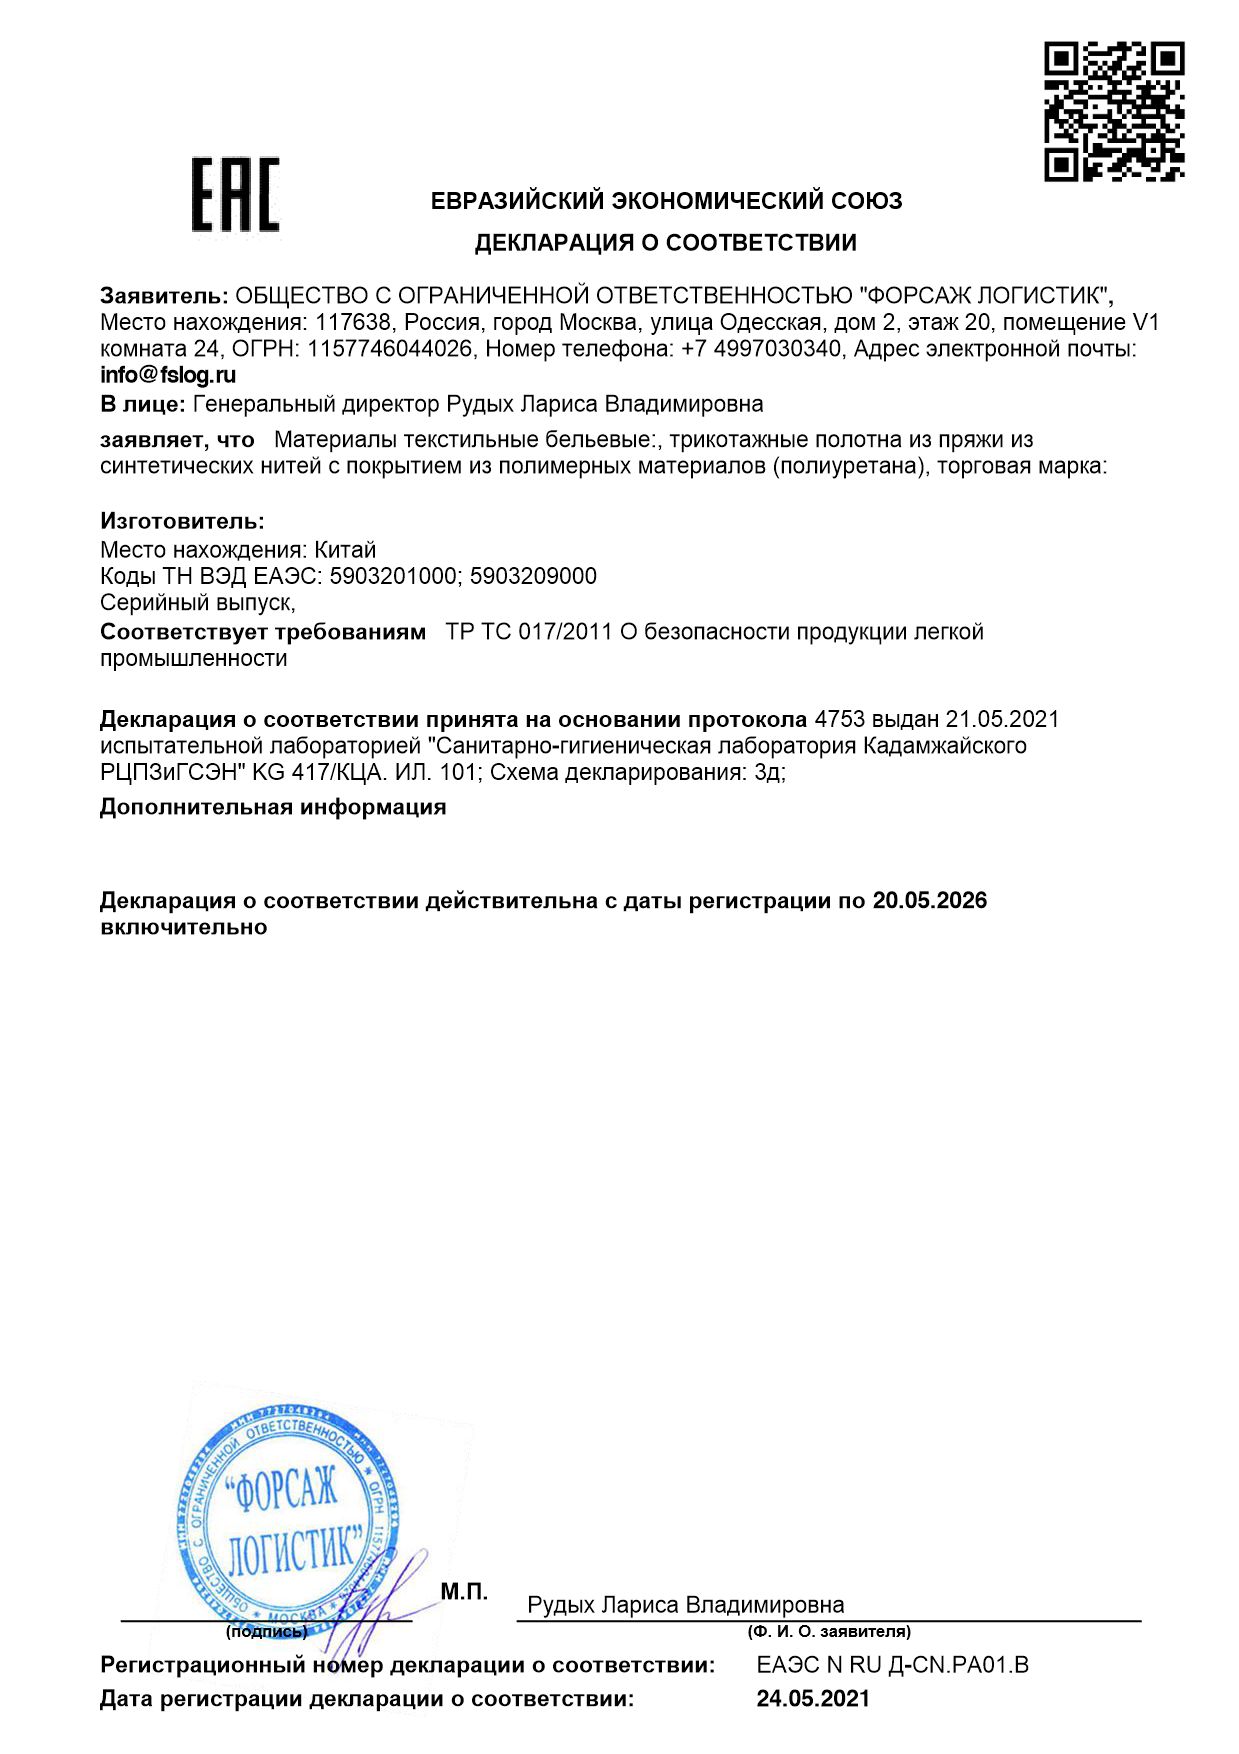 Сертификат ЕАЭС 2105